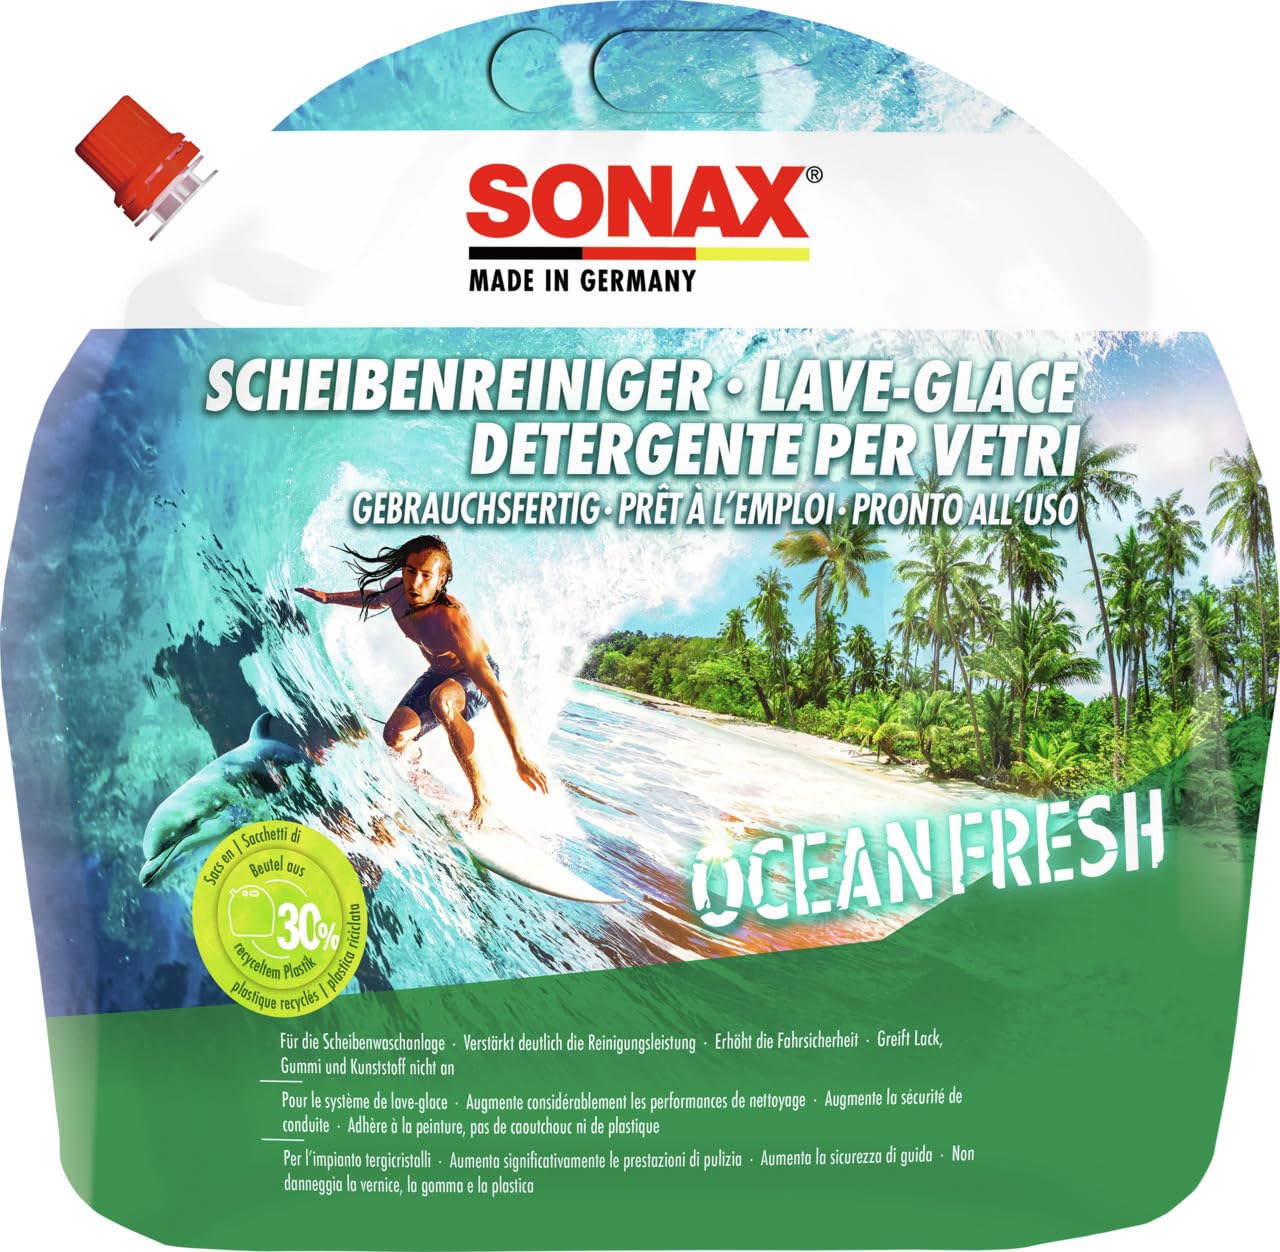 SONAX ScheibenReiniger gebrauchsfertig Ocean-Fresh (3 Liter) Sommerscheibenreiniger mit frischem und einzigartigem Ocean-fresh Dufterlebnis für die Scheibenwaschanlage | Art-Nr. 03884410 von SONAX